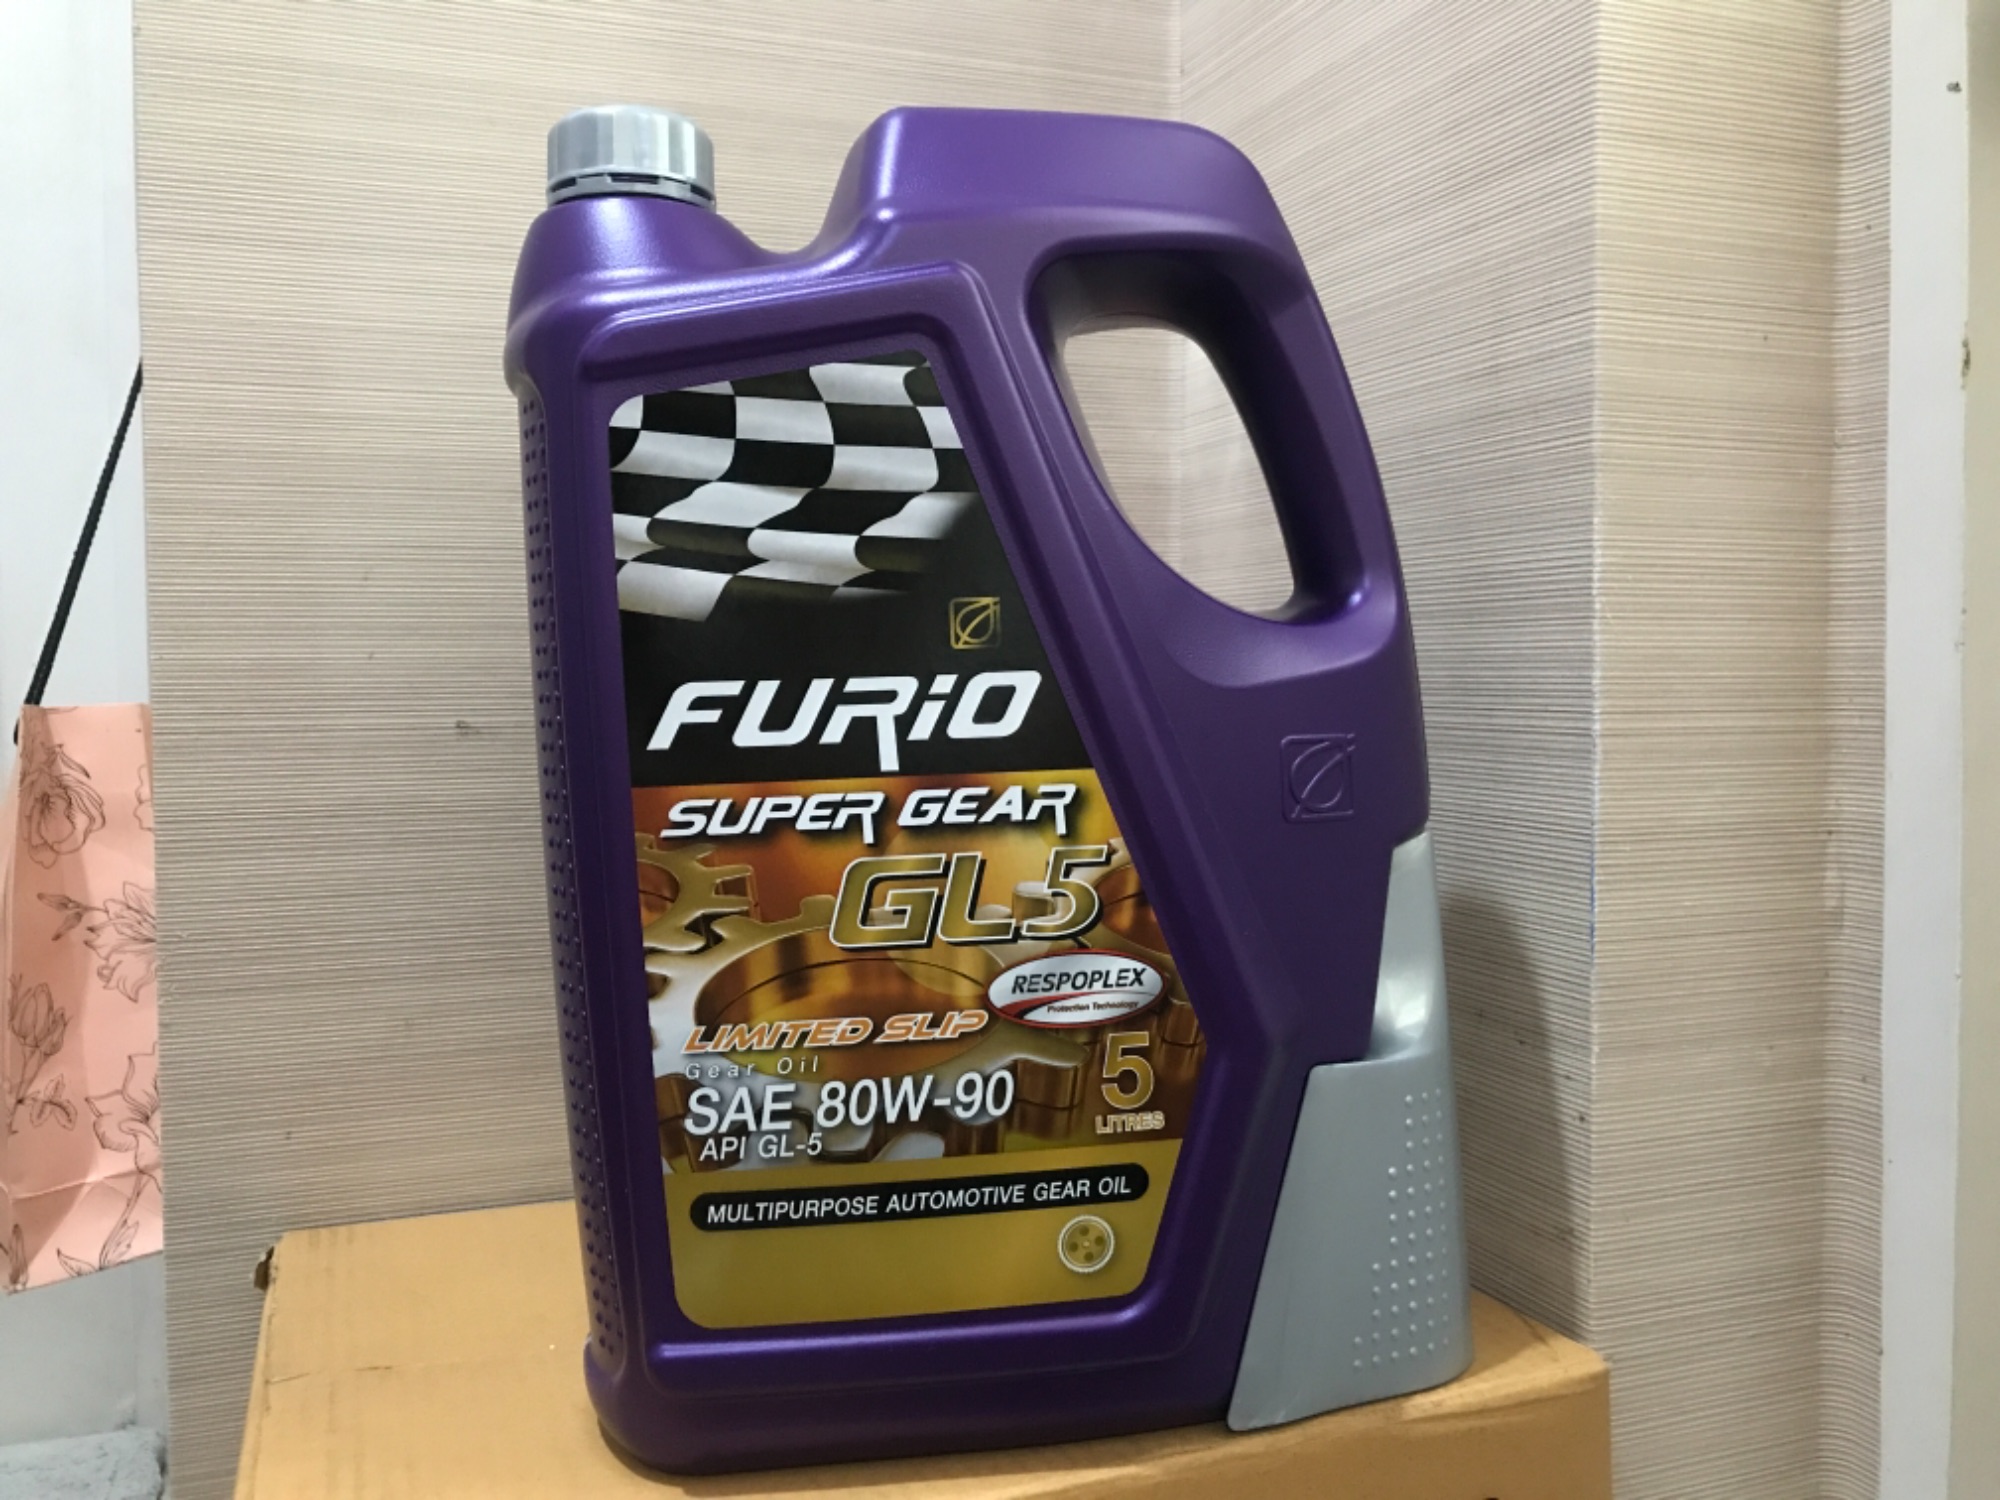 น้ำมันเกียร์ และ เฟืองท้าย บางจาก ฟูลิโอ Furio super gear GL-5 sae 80w/90 ขนาด 5 ลิตร